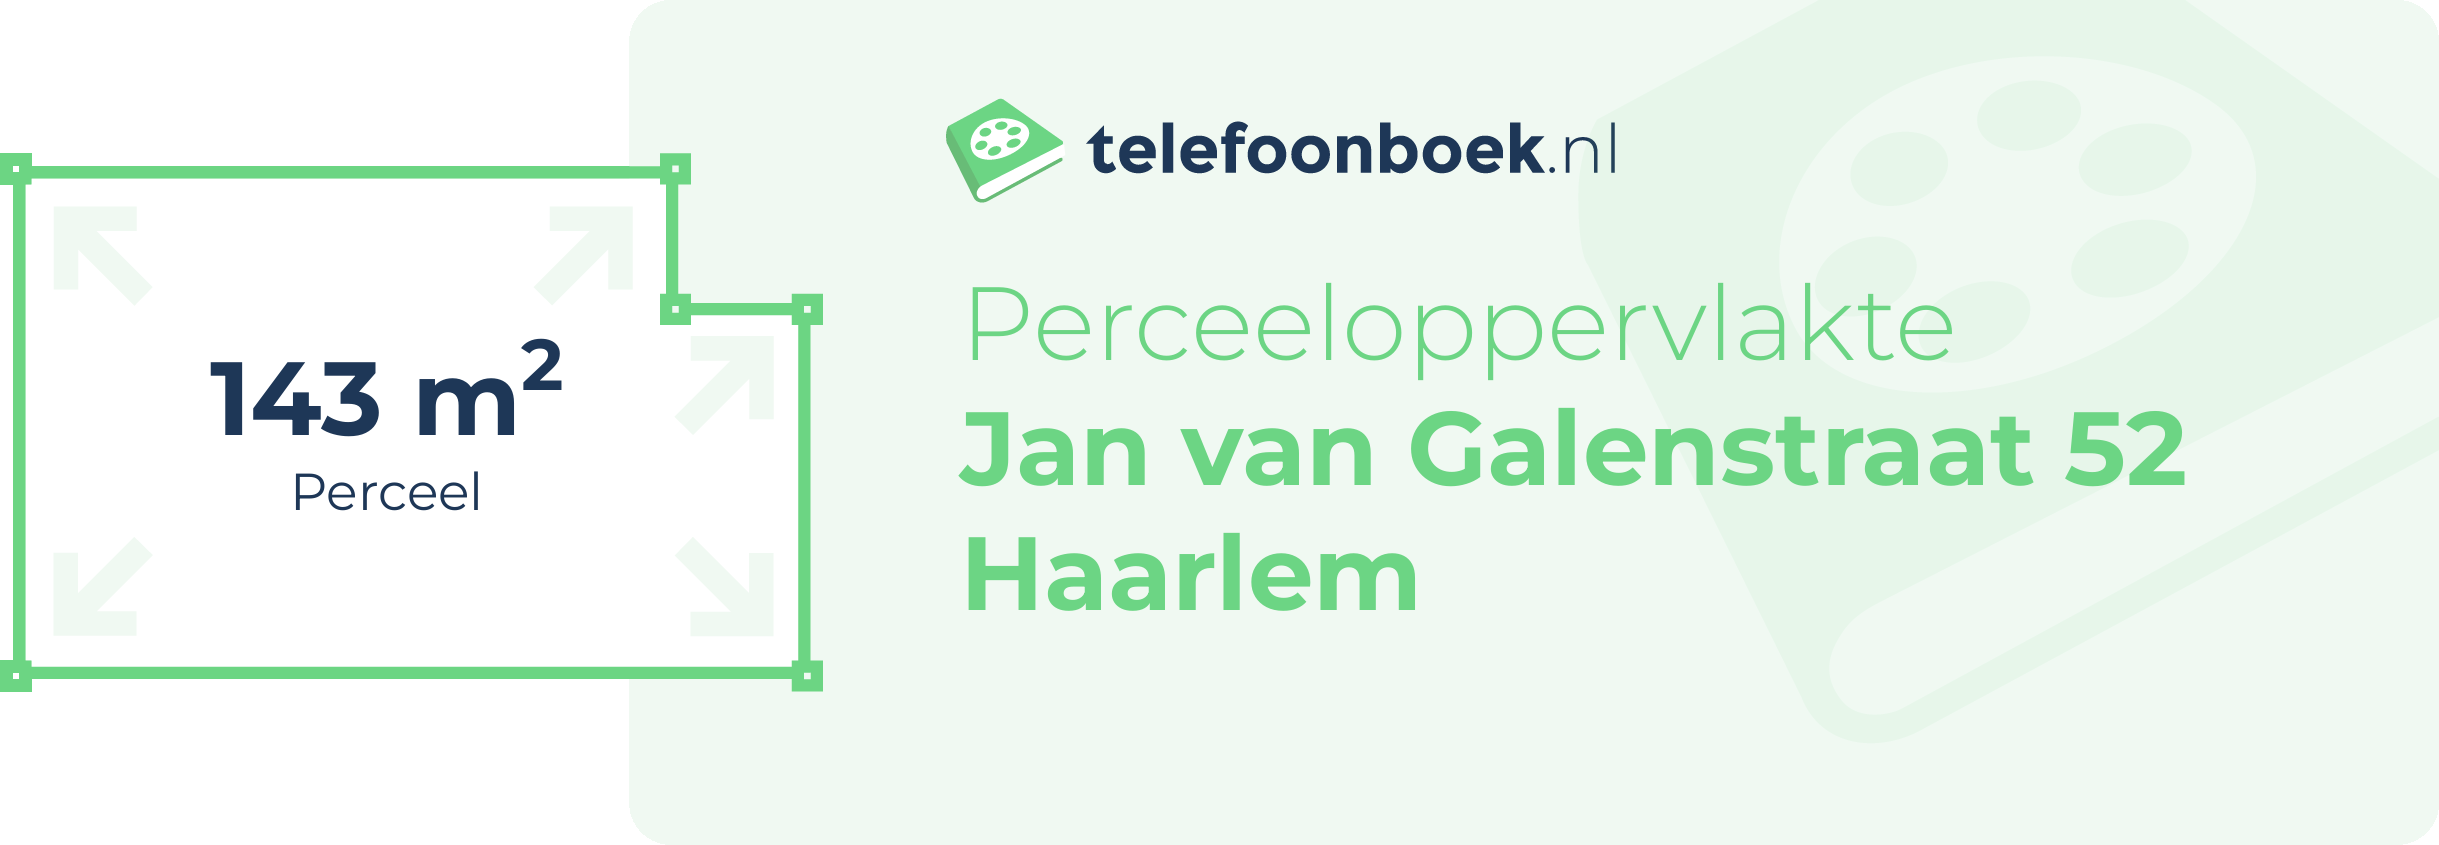 Perceeloppervlakte Jan Van Galenstraat 52 Haarlem